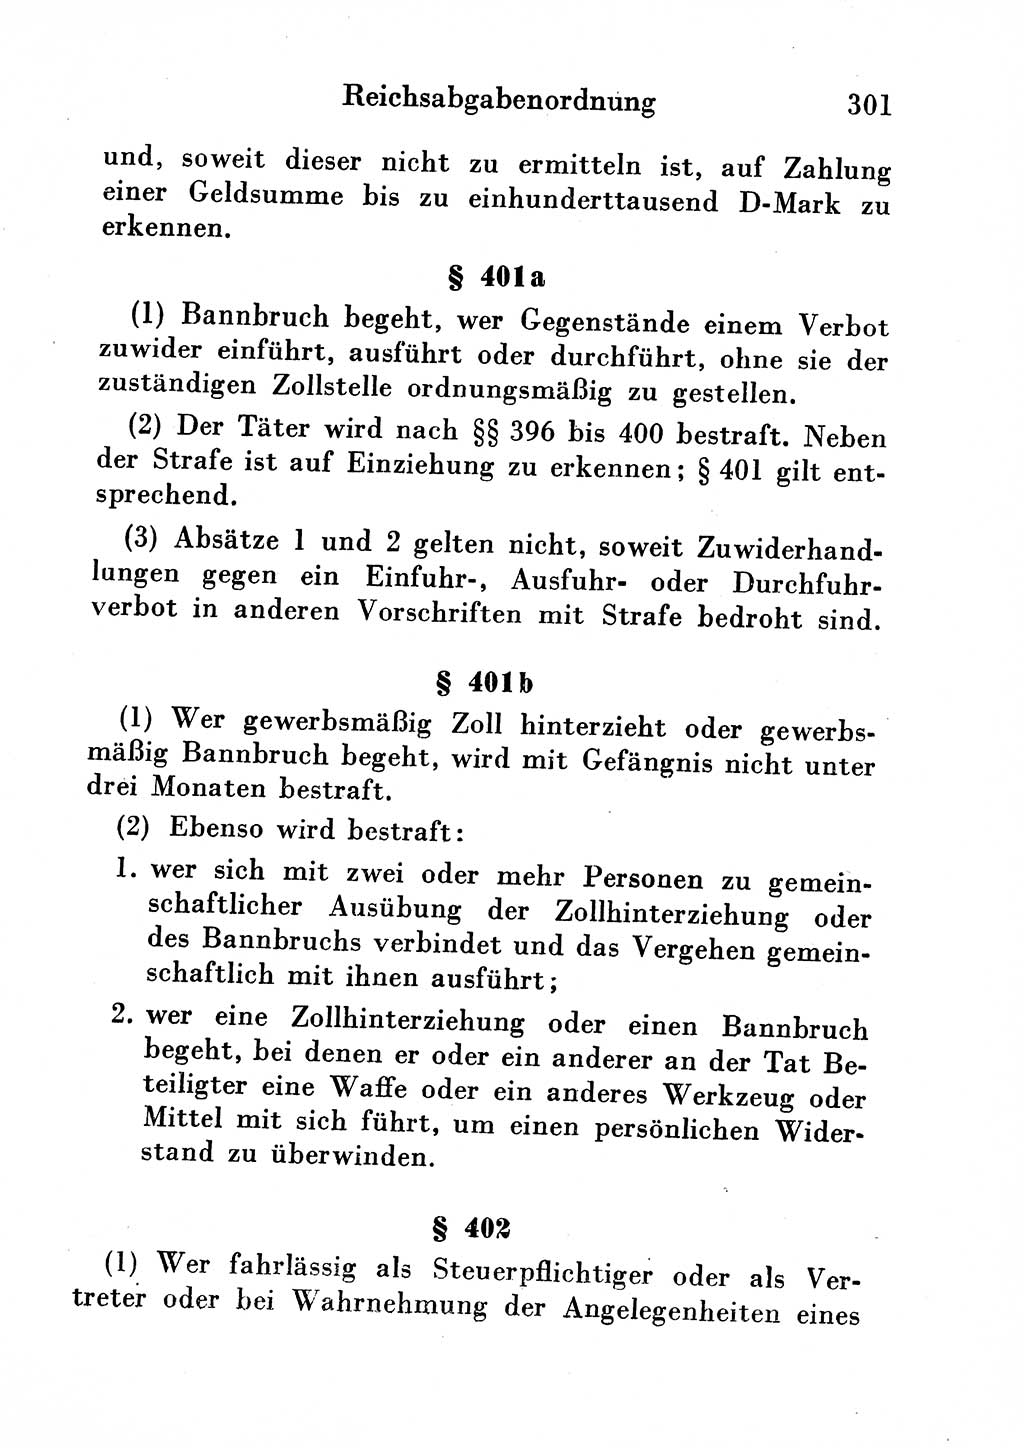 Strafgesetzbuch (StGB) und andere Strafgesetze [Deutsche Demokratische Republik (DDR)] 1954, Seite 301 (StGB Strafges. DDR 1954, S. 301)